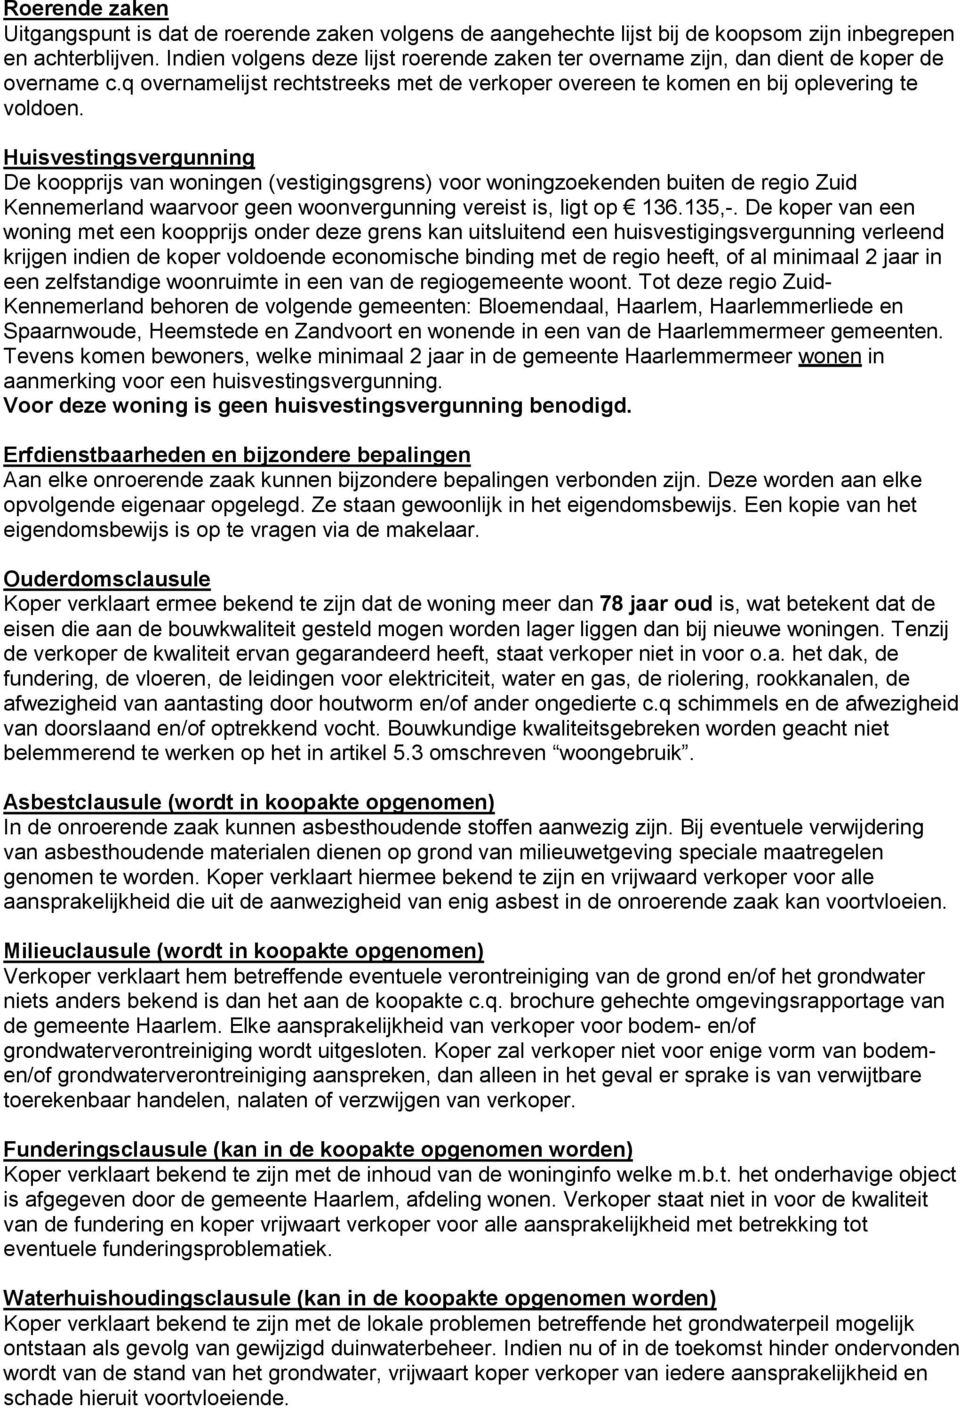 Huisvestingsvergunning De koopprijs van woningen (vestigingsgrens) voor woningzoekenden buiten de regio Zuid Kennemerland waarvoor geen woonvergunning vereist is, ligt op 136.135,-.